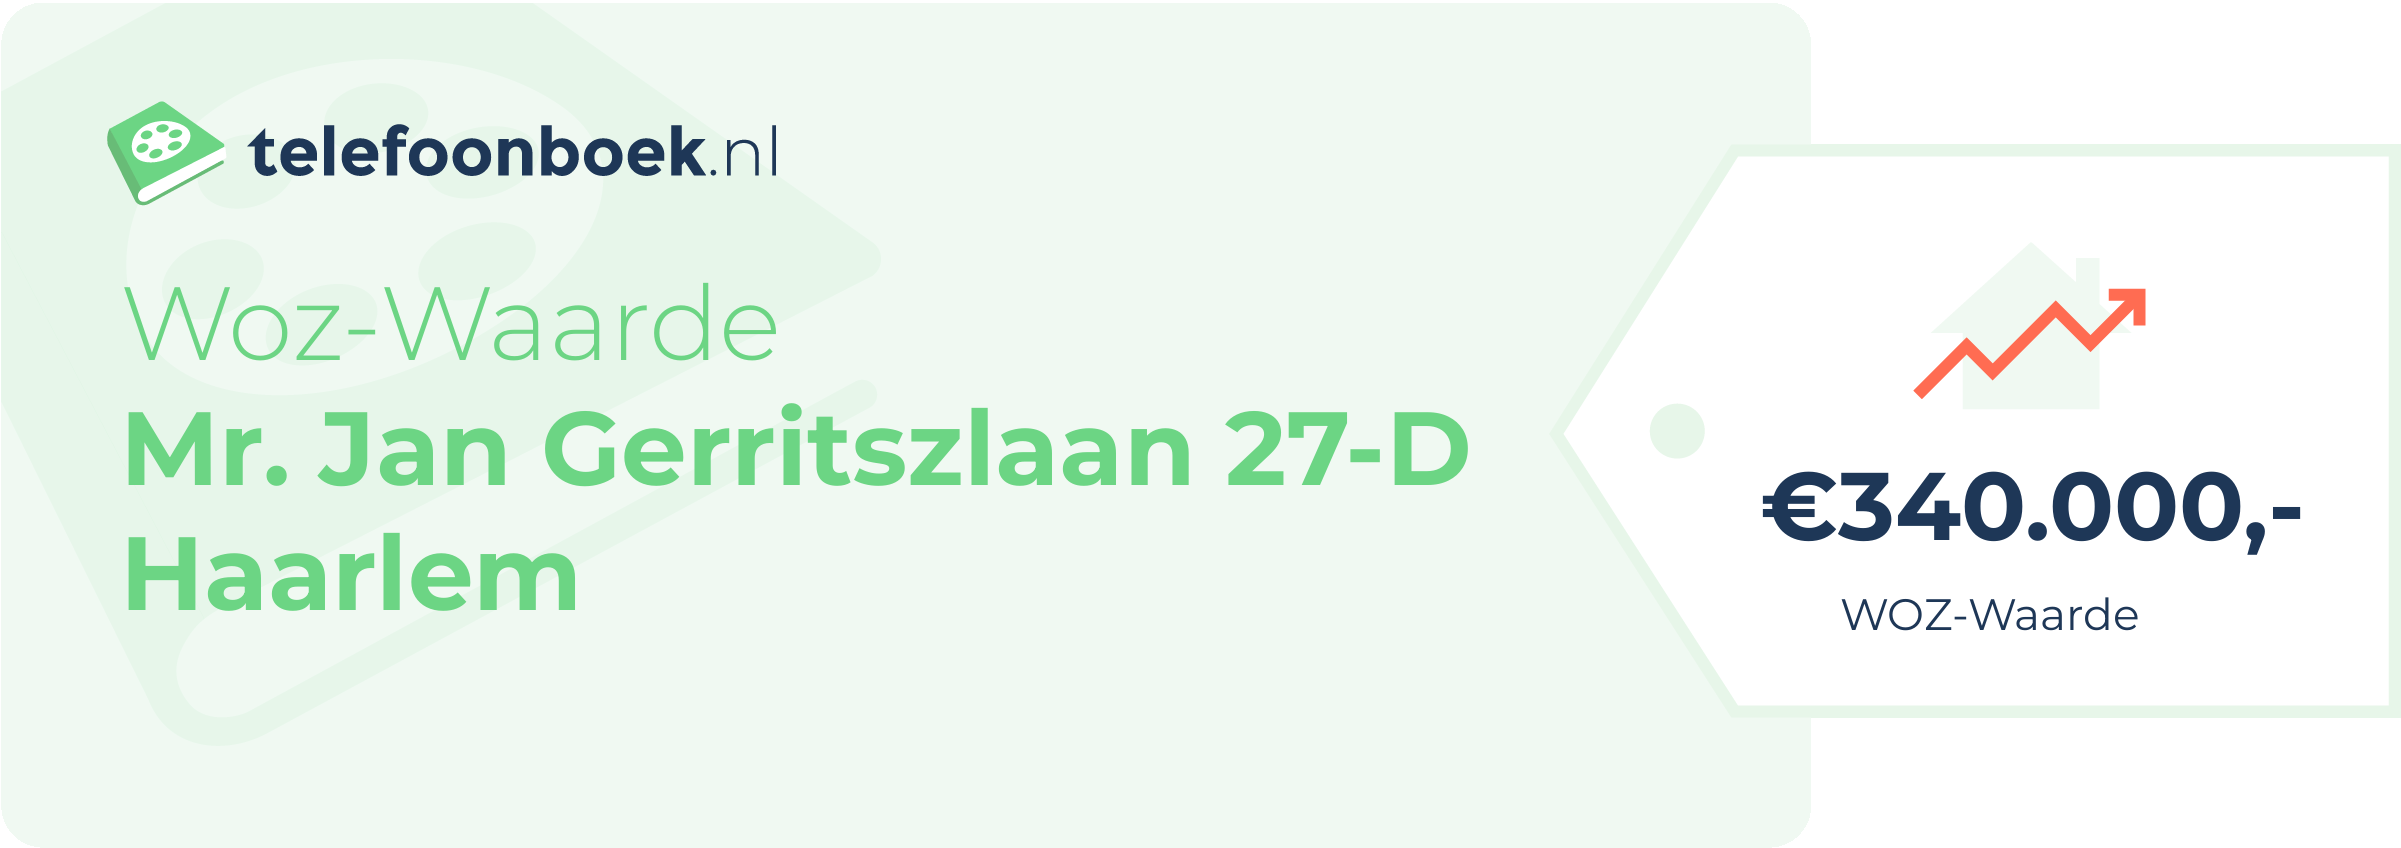 WOZ-waarde Mr. Jan Gerritszlaan 27-D Haarlem